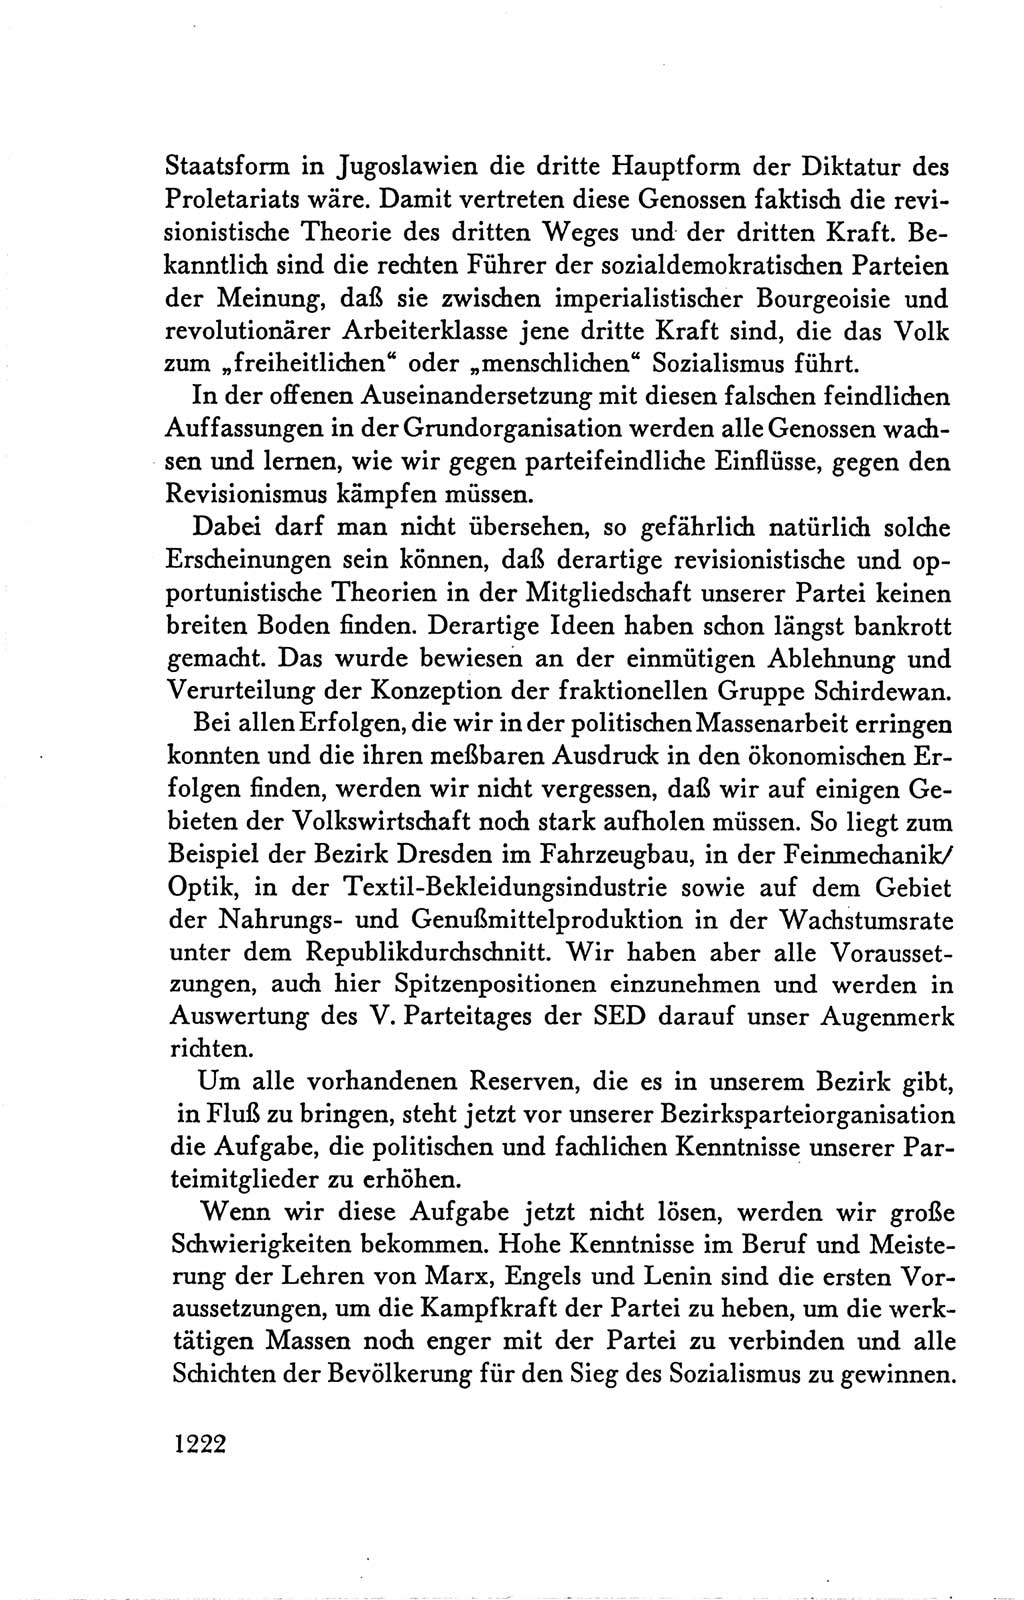 Protokoll der Verhandlungen des Ⅴ. Parteitages der Sozialistischen Einheitspartei Deutschlands (SED) [Deutsche Demokratische Republik (DDR)] 1958, Seite 1222